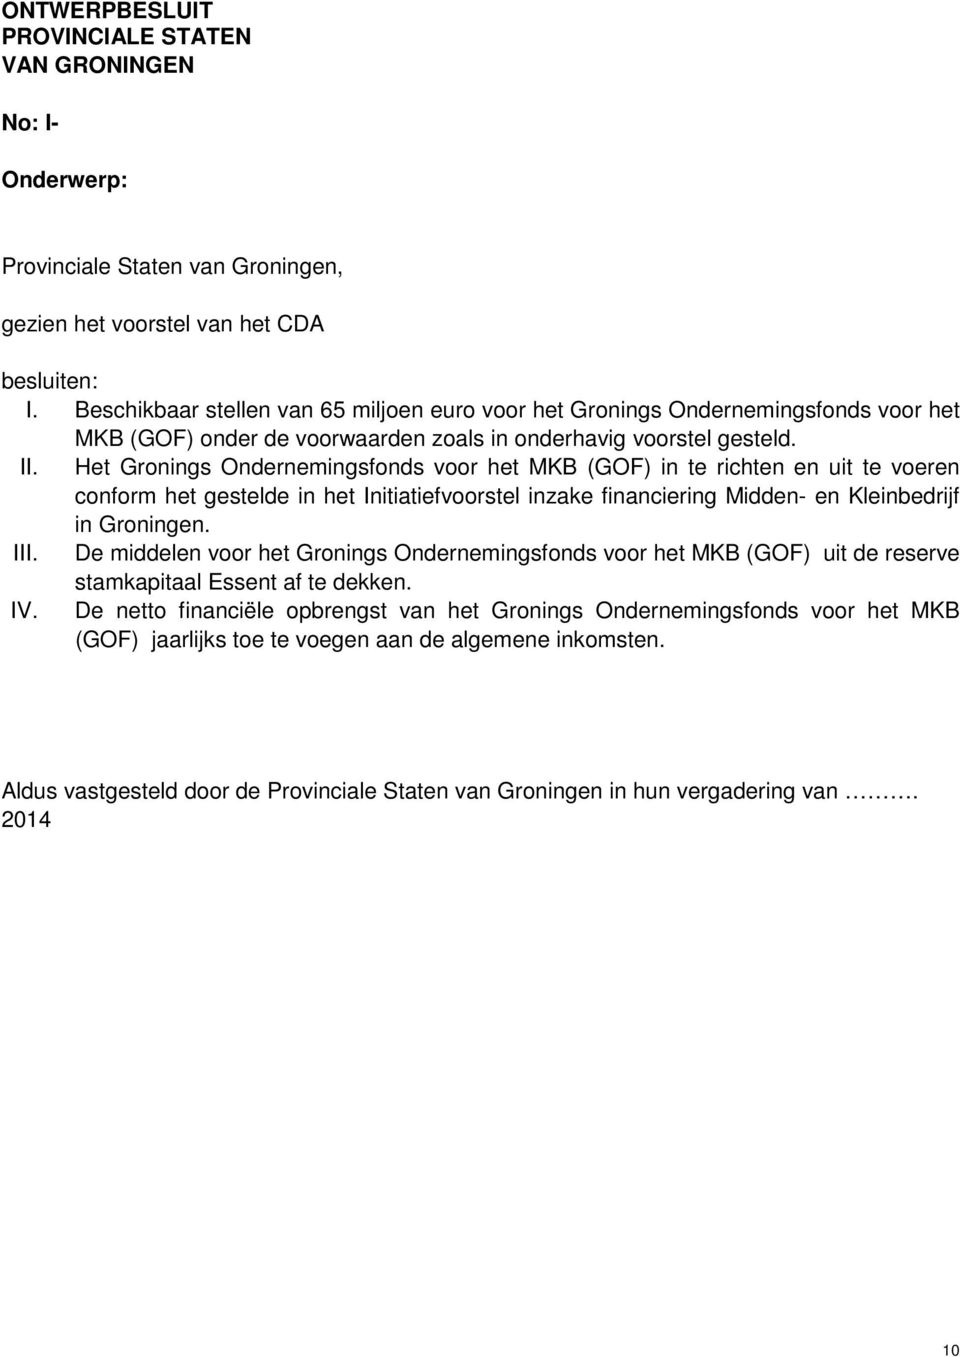 Het Gronings Ondernemingsfonds voor het MKB (GOF) in te richten en uit te voeren conform het gestelde in het Initiatiefvoorstel inzake financiering Midden- en Kleinbedrijf in Groningen. III.